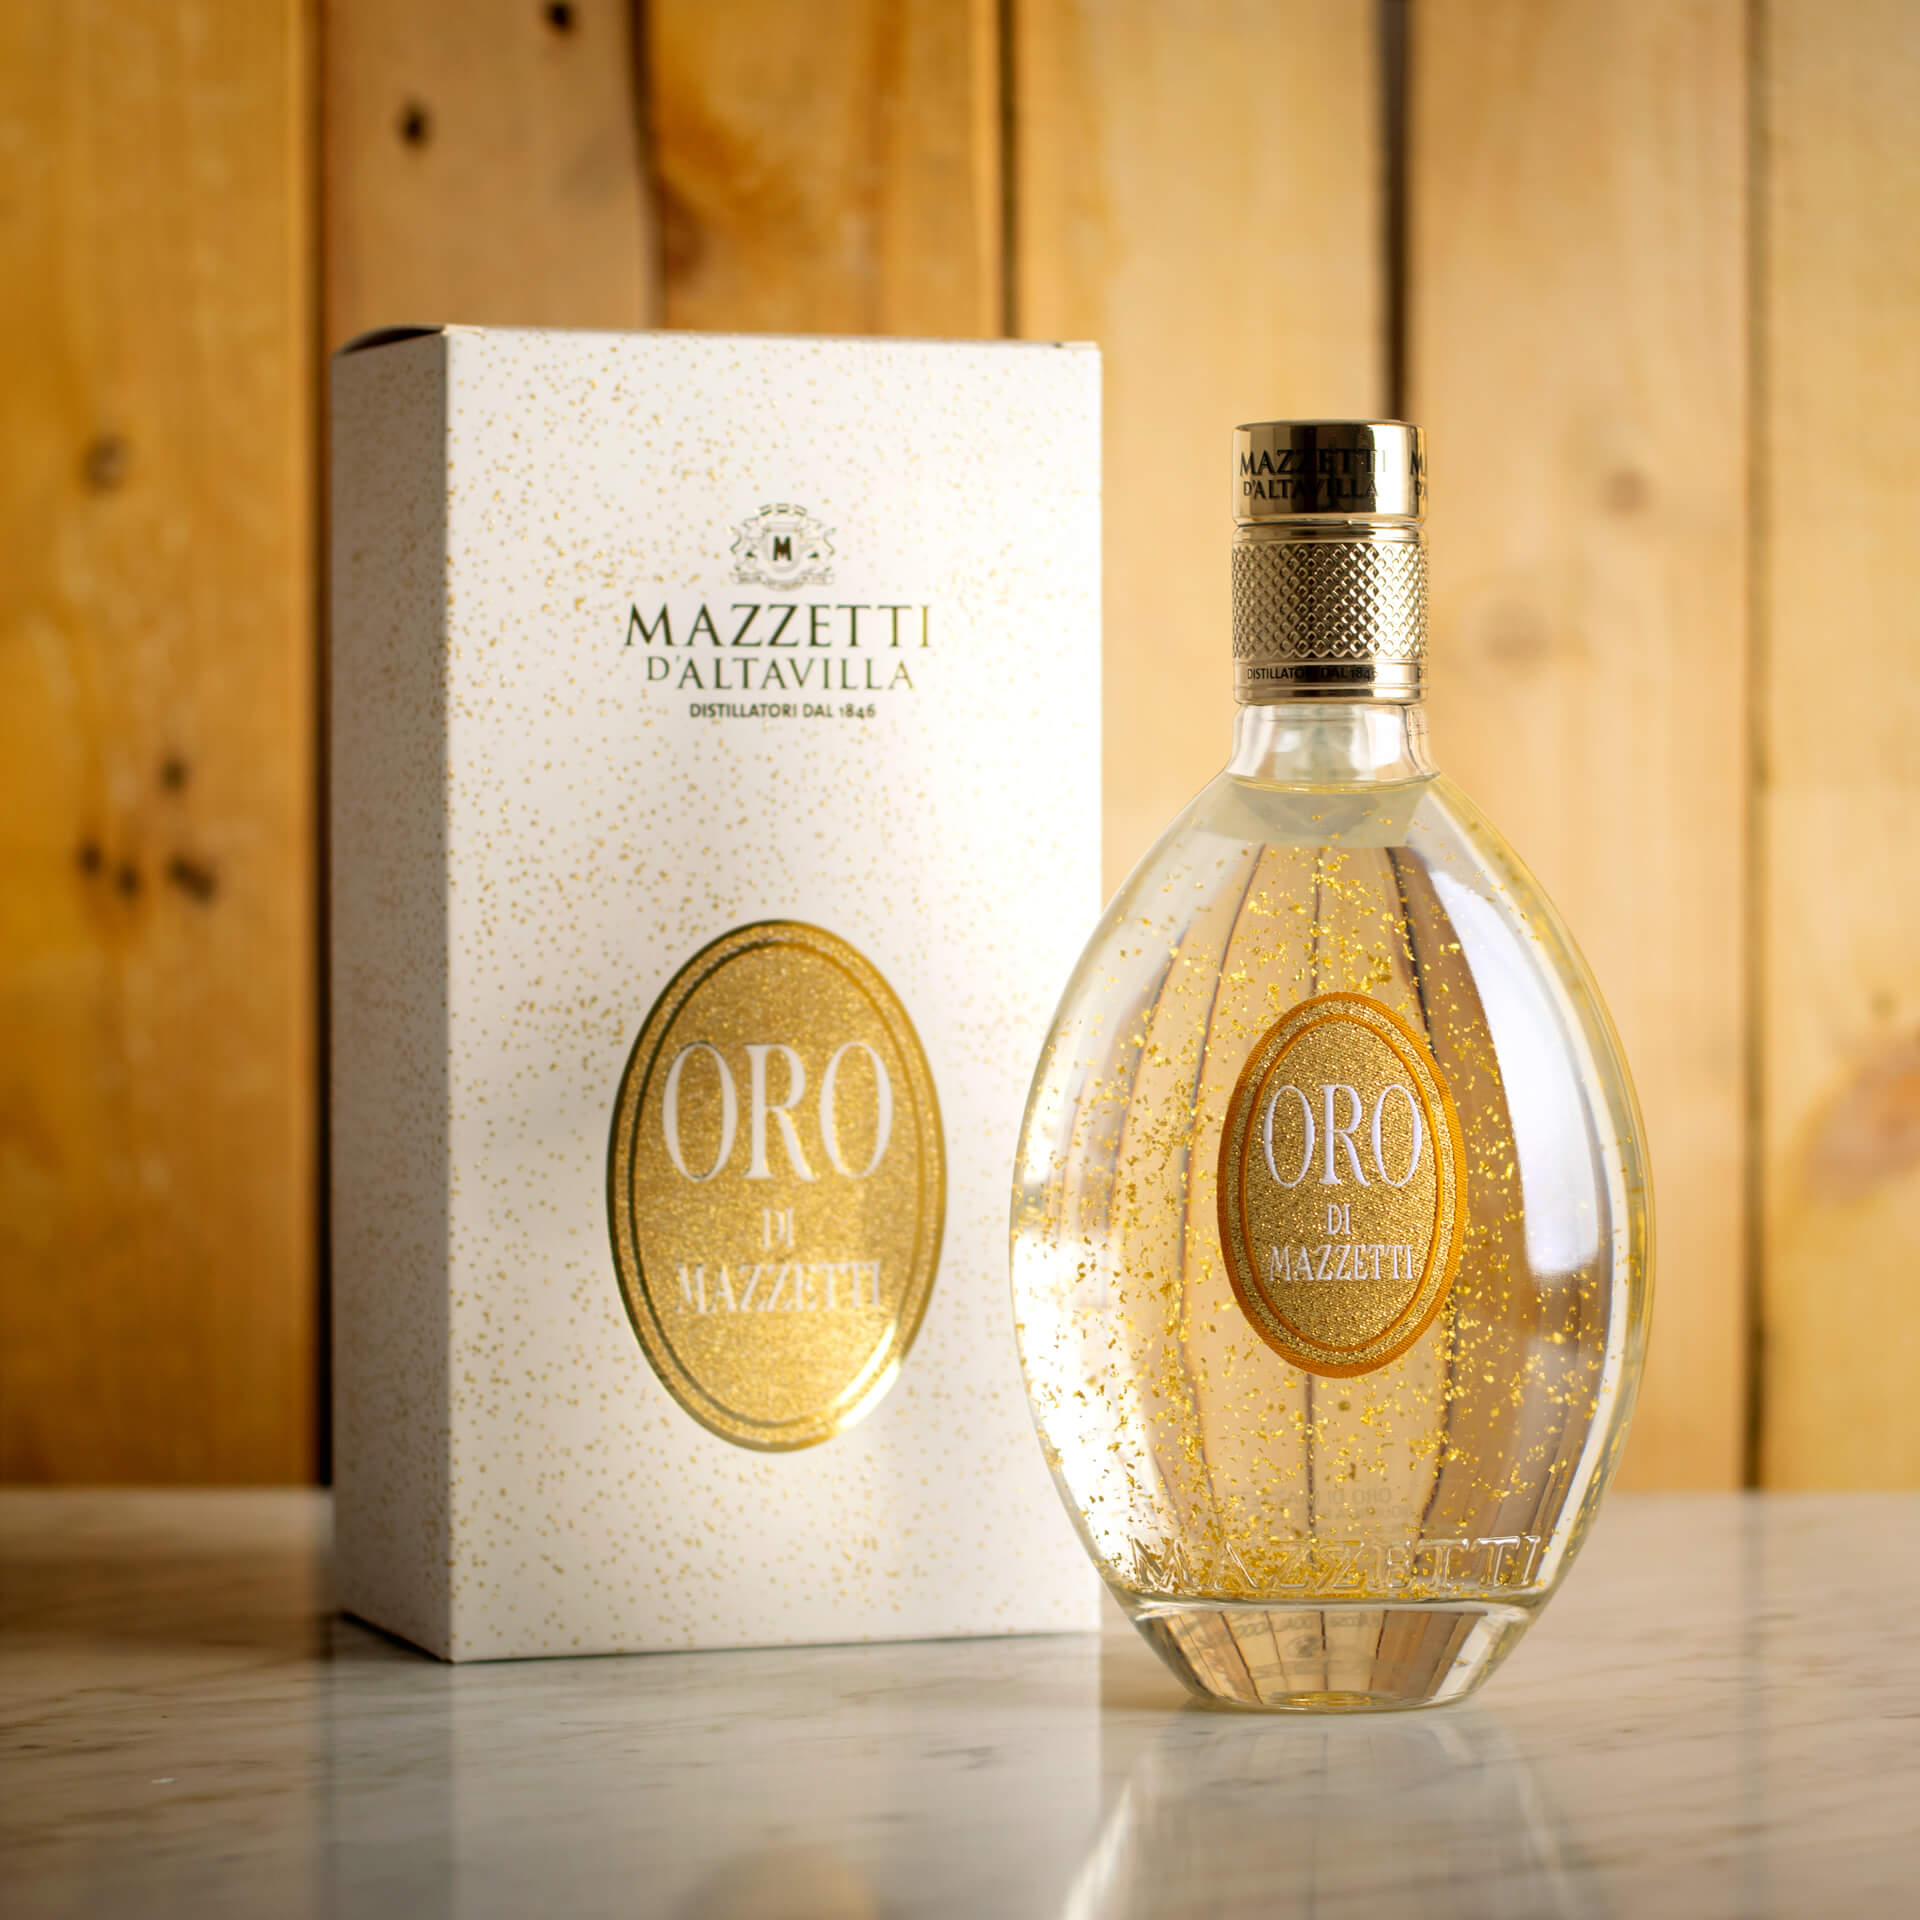 Oro Mazzetti Grappa-Based Liqueur Mazzetti with Case